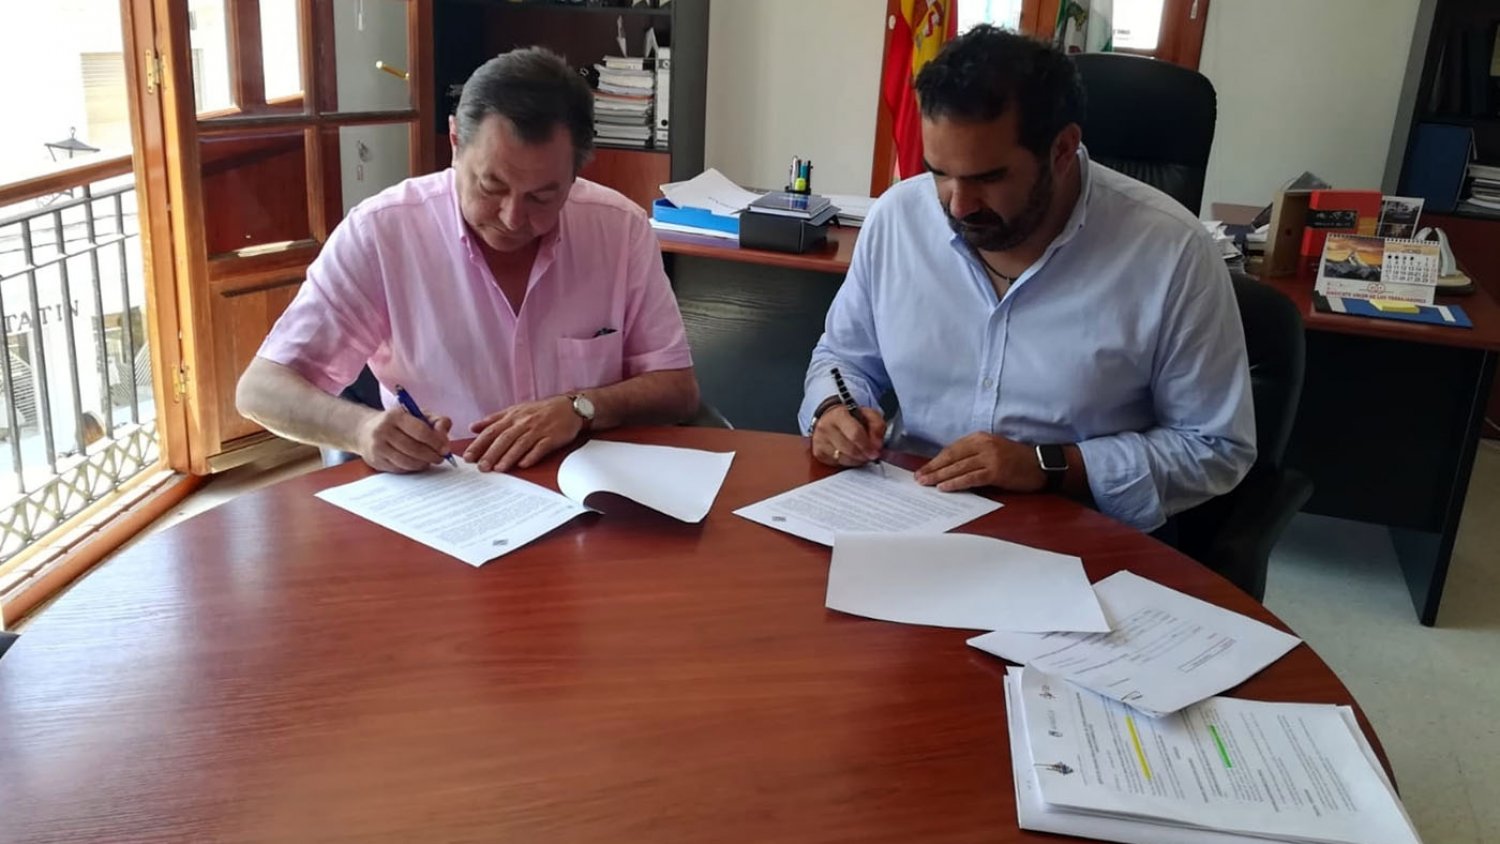 Marbella acogerá del 16 al 24 de noviembre el Campeonato de España Absoluto de Ajedrez 2019